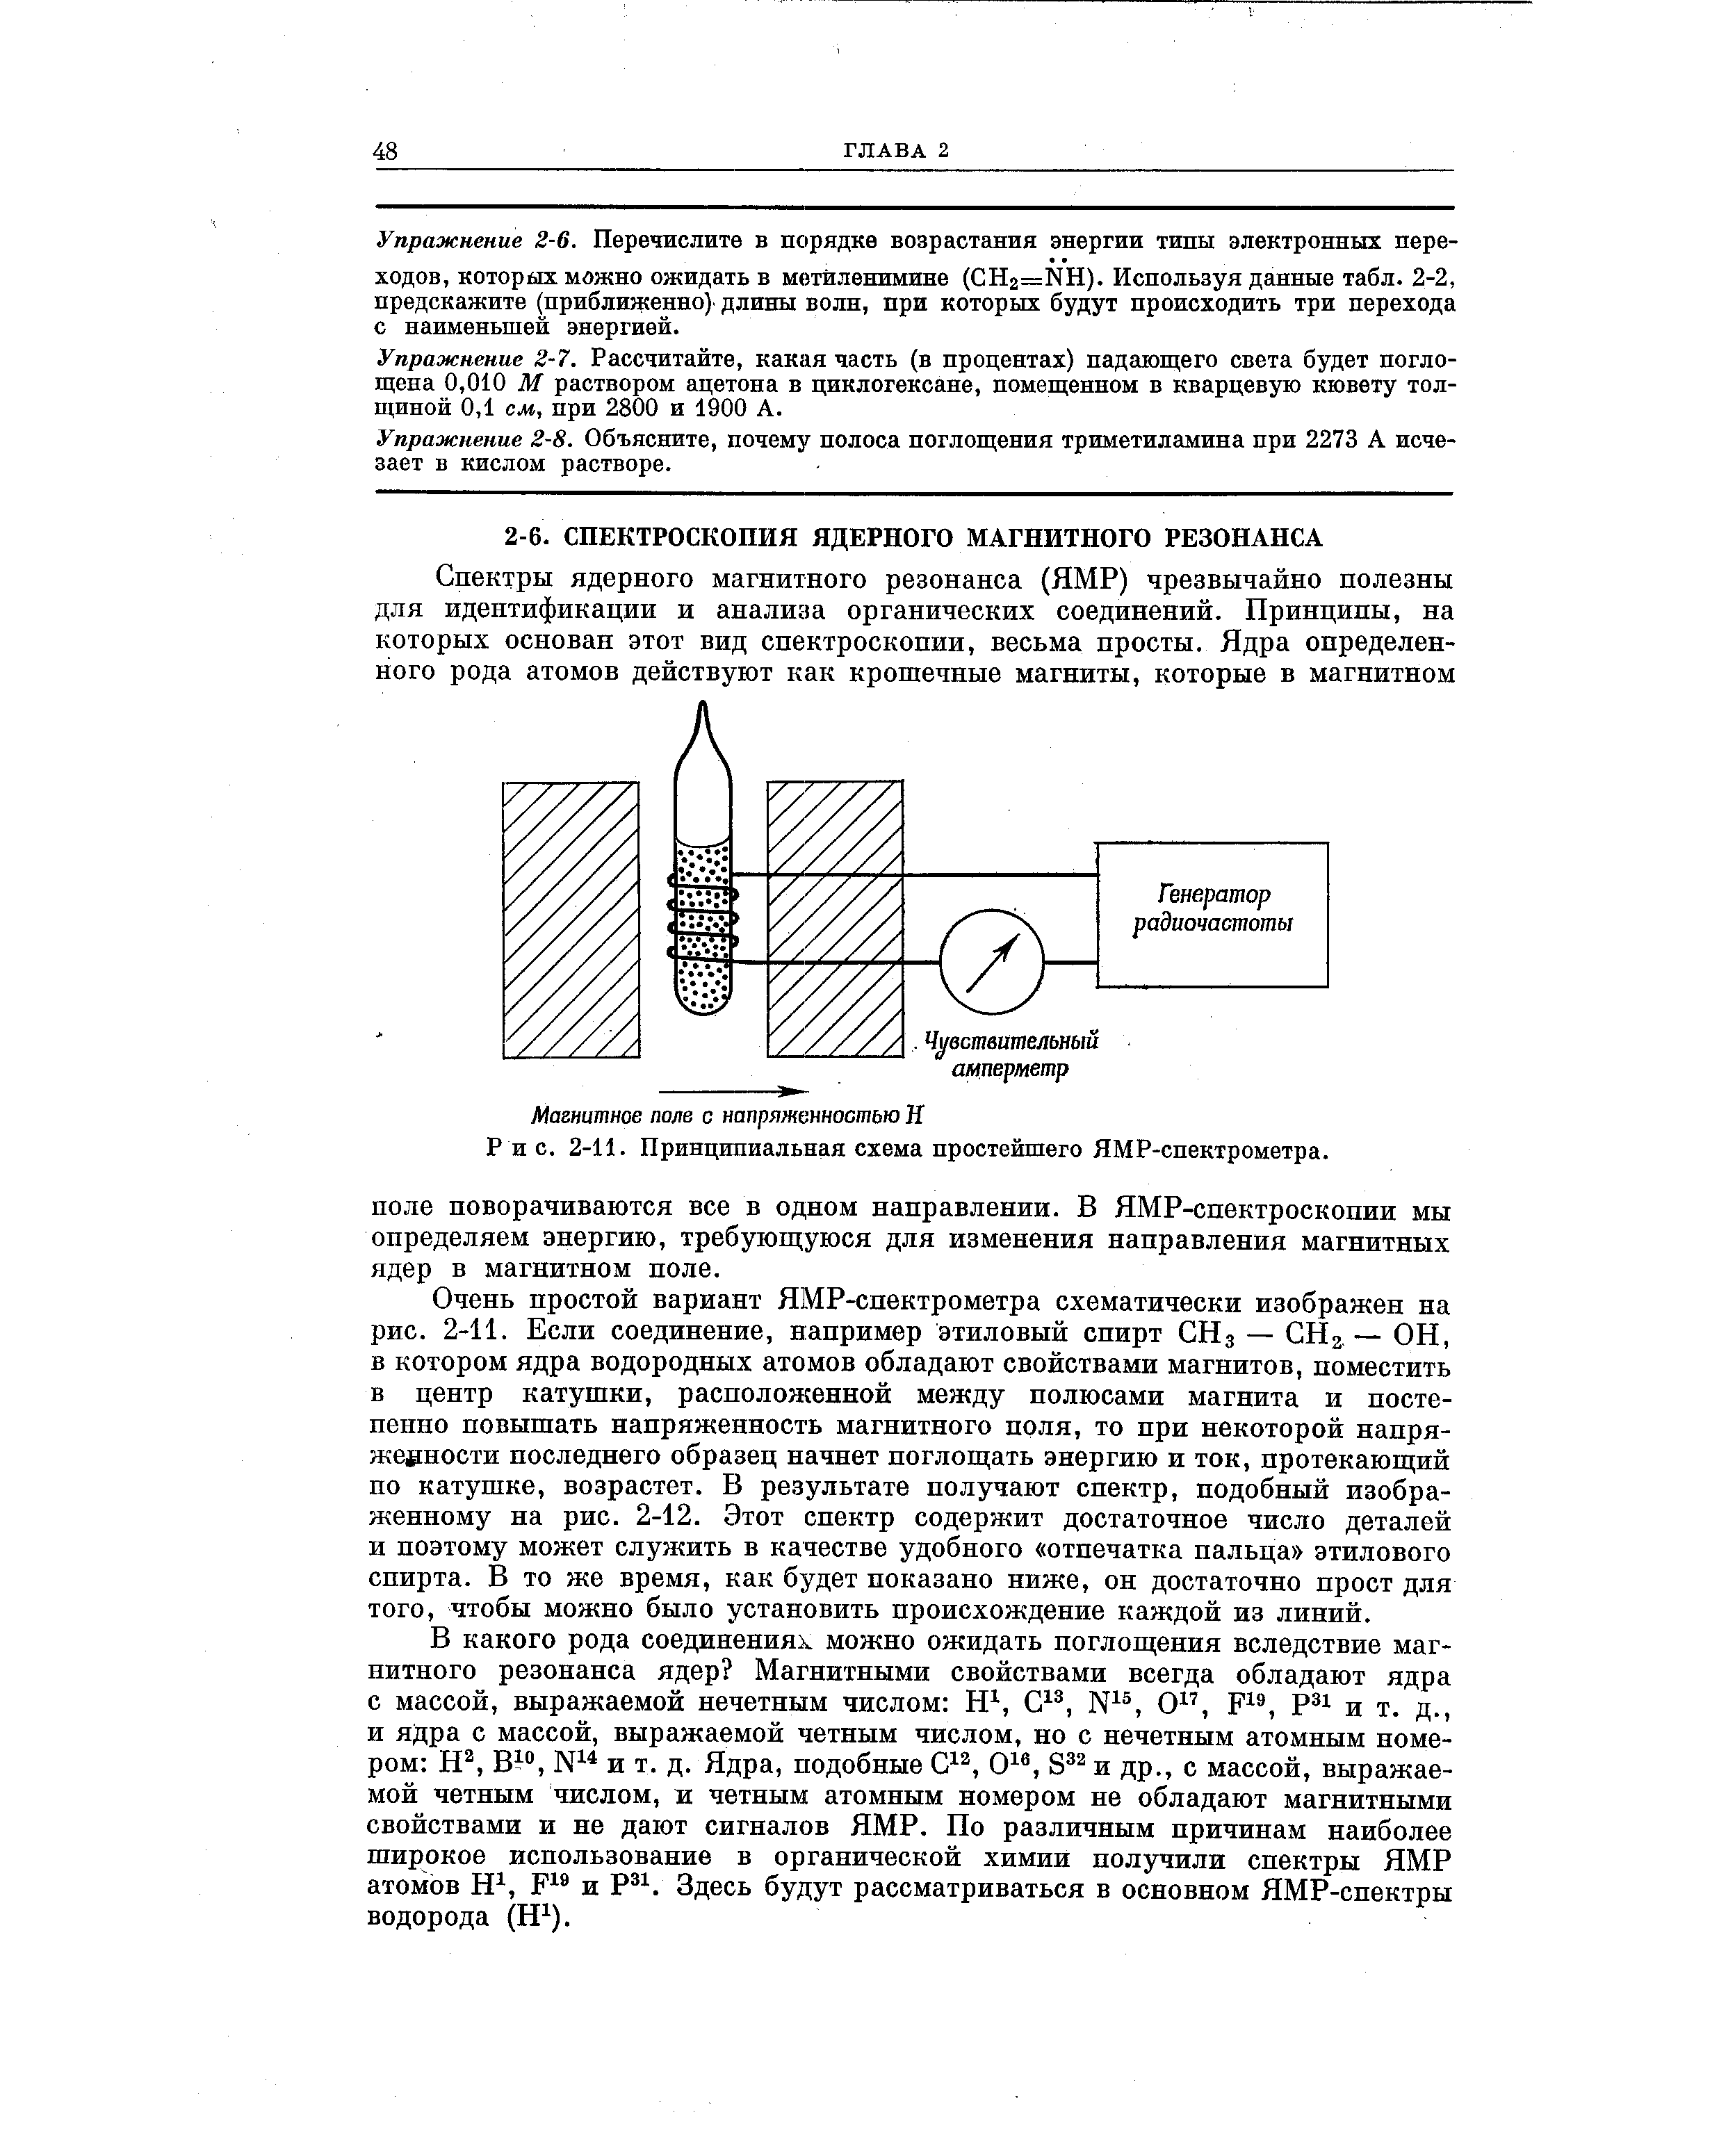 Магнитное поле с напряженностью Н Р и с. 2-11. Принципиальная схема простейшего ЯМР-спектрометра.